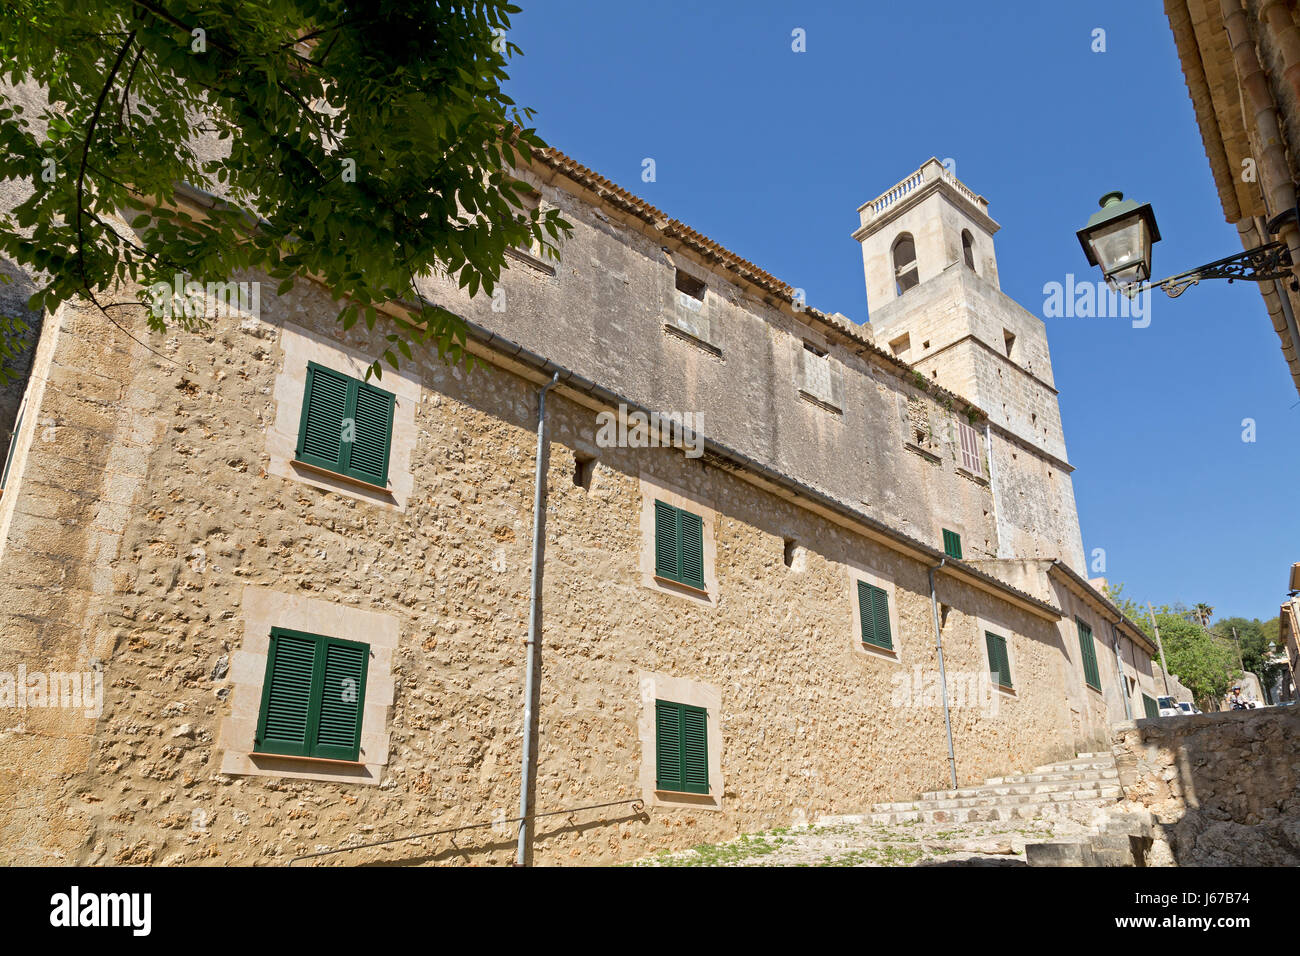 Esglesia de Monti-Sion in Pollenca, Majorca, Spain Stock Photo